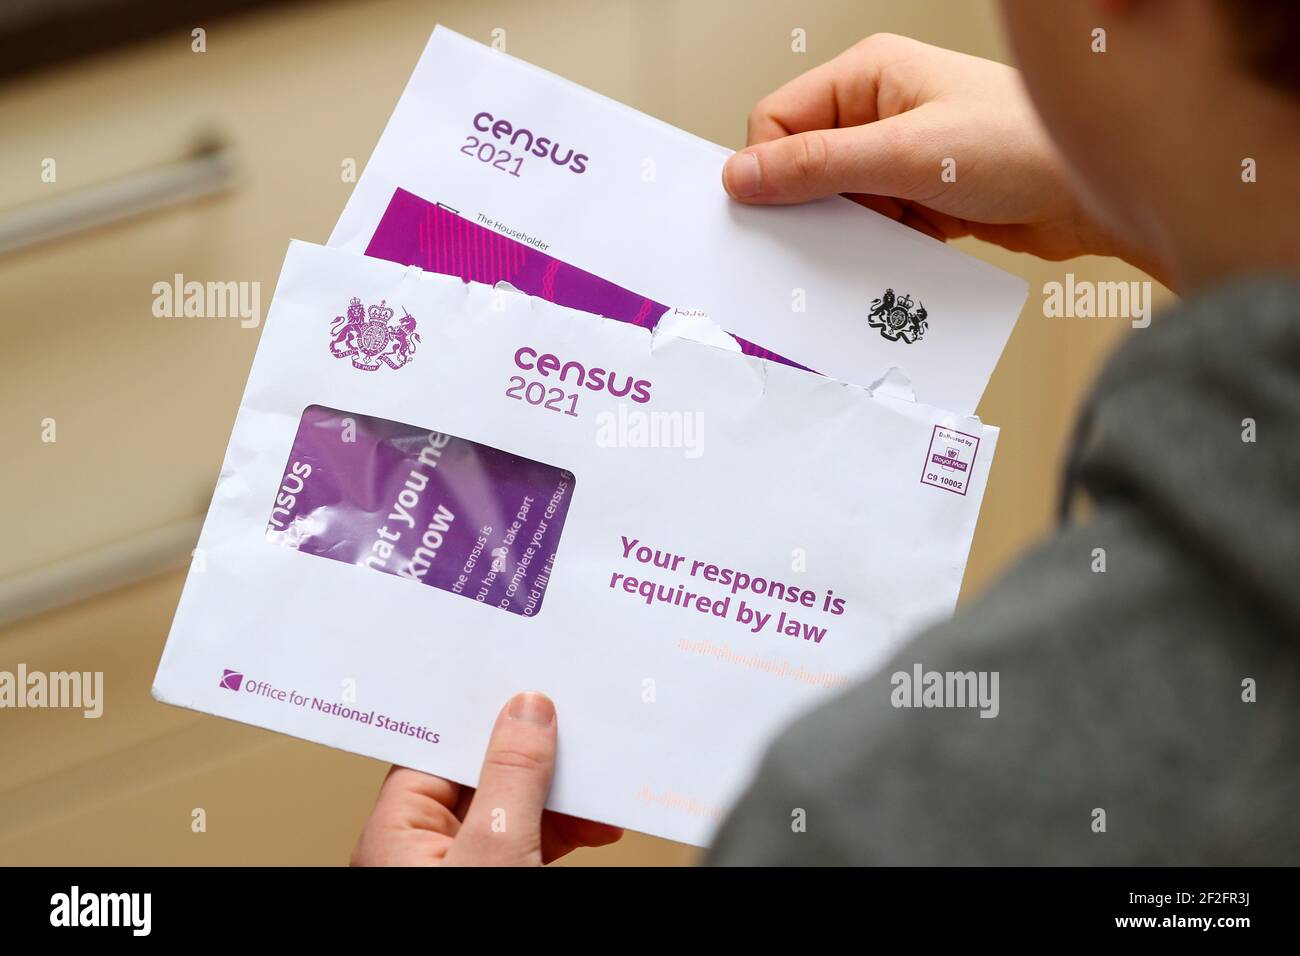 Ouverture de la lettre du recensement britannique de 2021 Banque D'Images